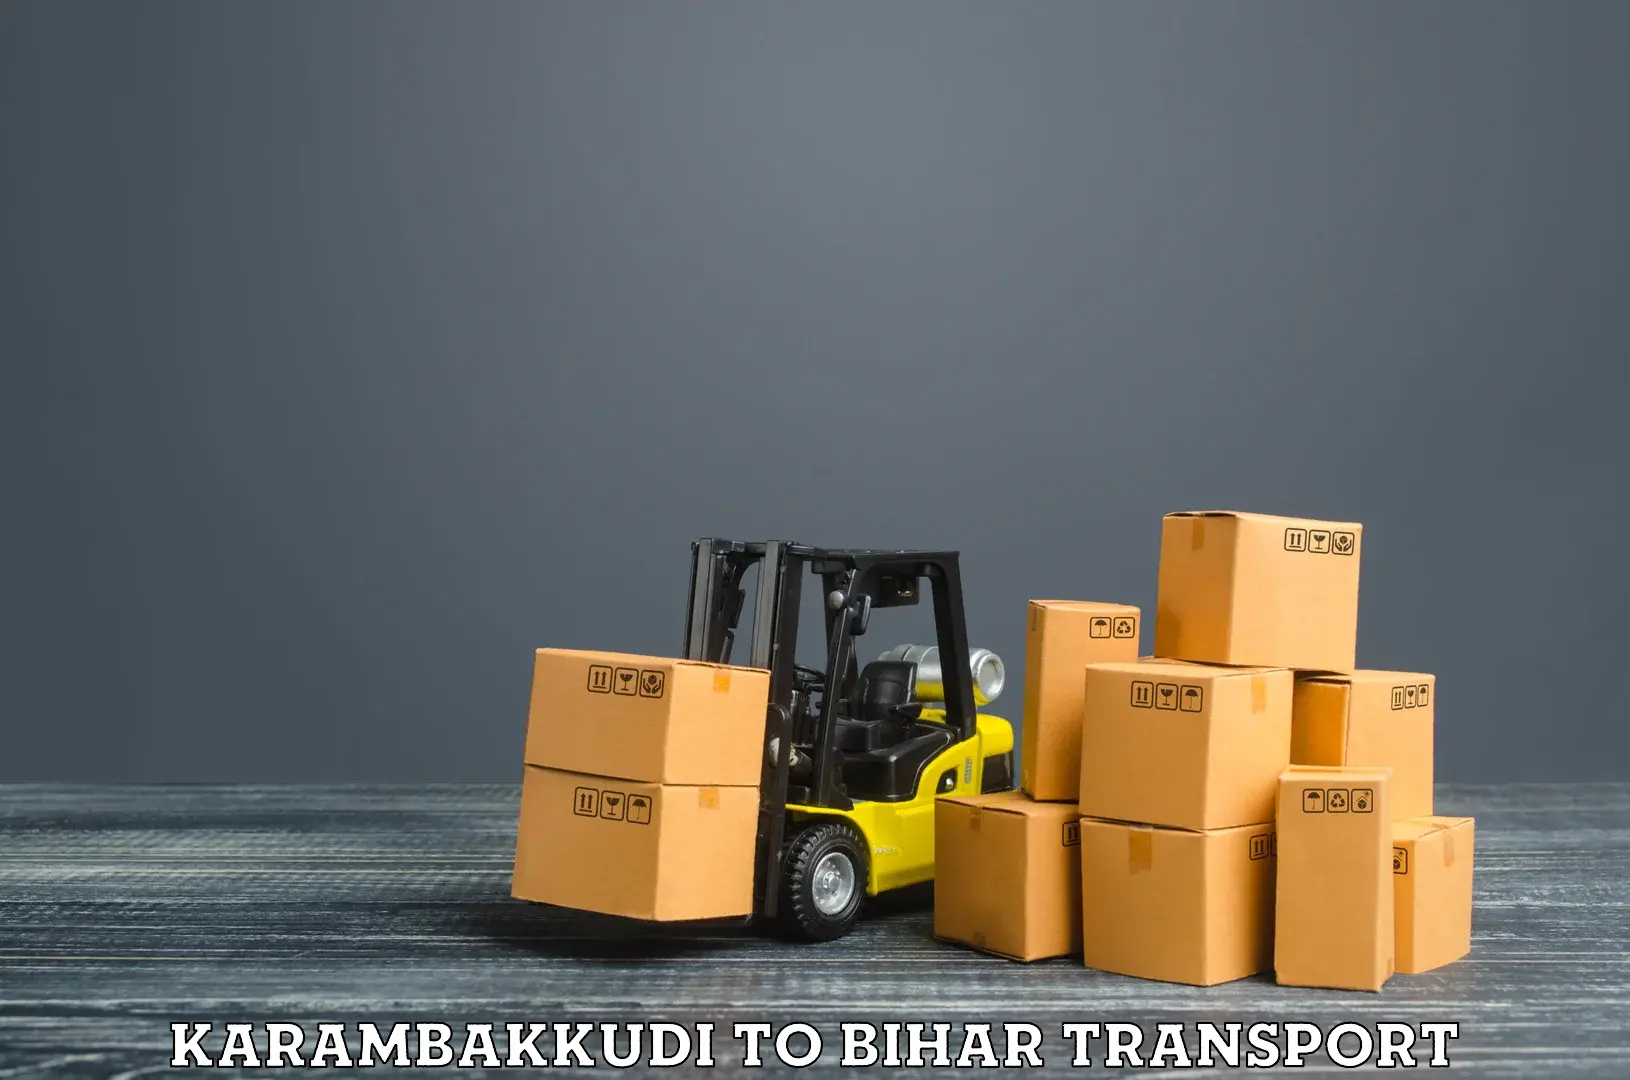 Air freight transport services Karambakkudi to Thakurganj